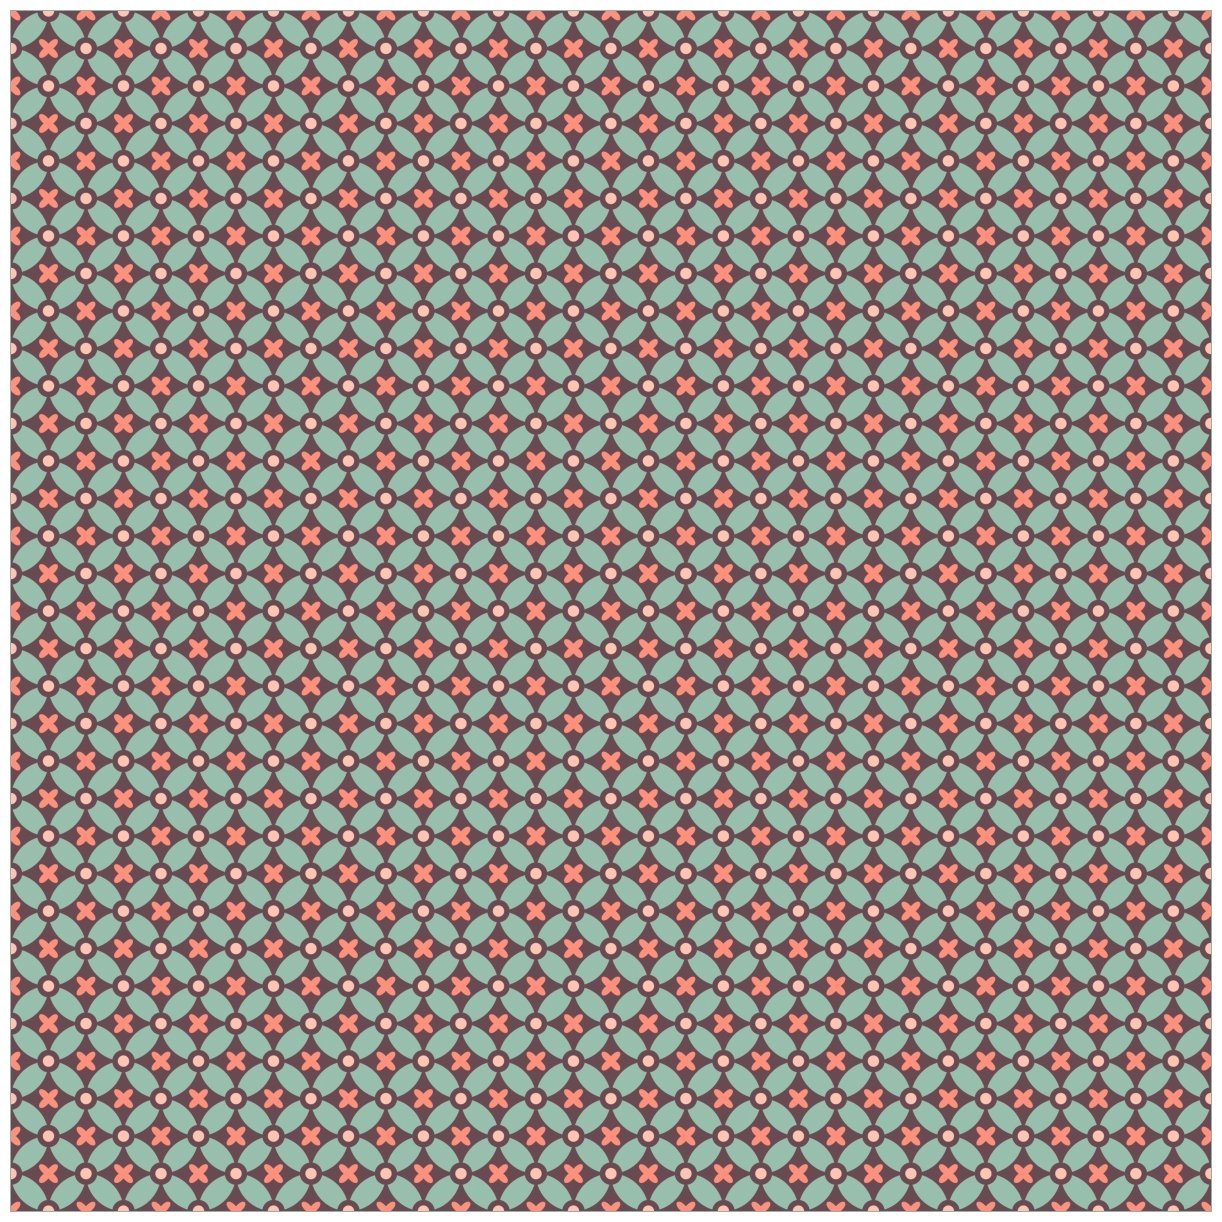 Wallario Tischplatte Muster mit Kreuzen, Kreisen und Vierecken, in rot, braun und grün (1 St), für Ikea Lack Tisch geeignet | Tischplatten